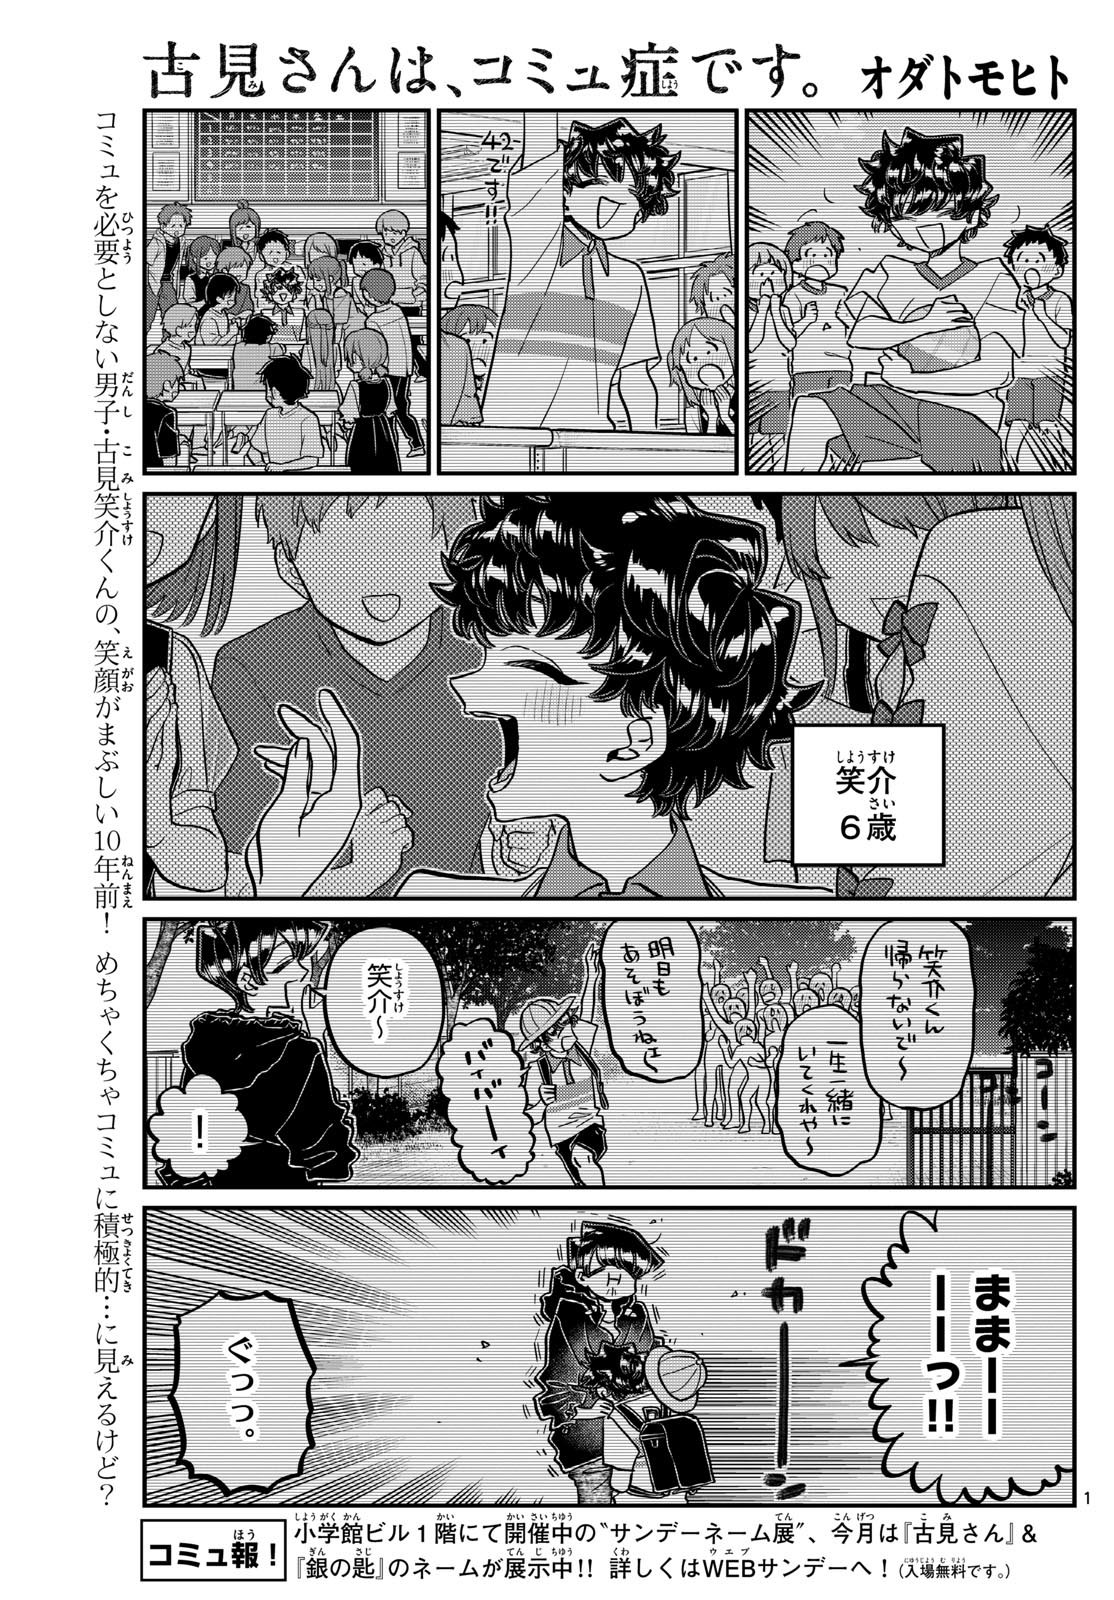 Komi-san wa Komyushou Desu - Chapter 461 - Page 1